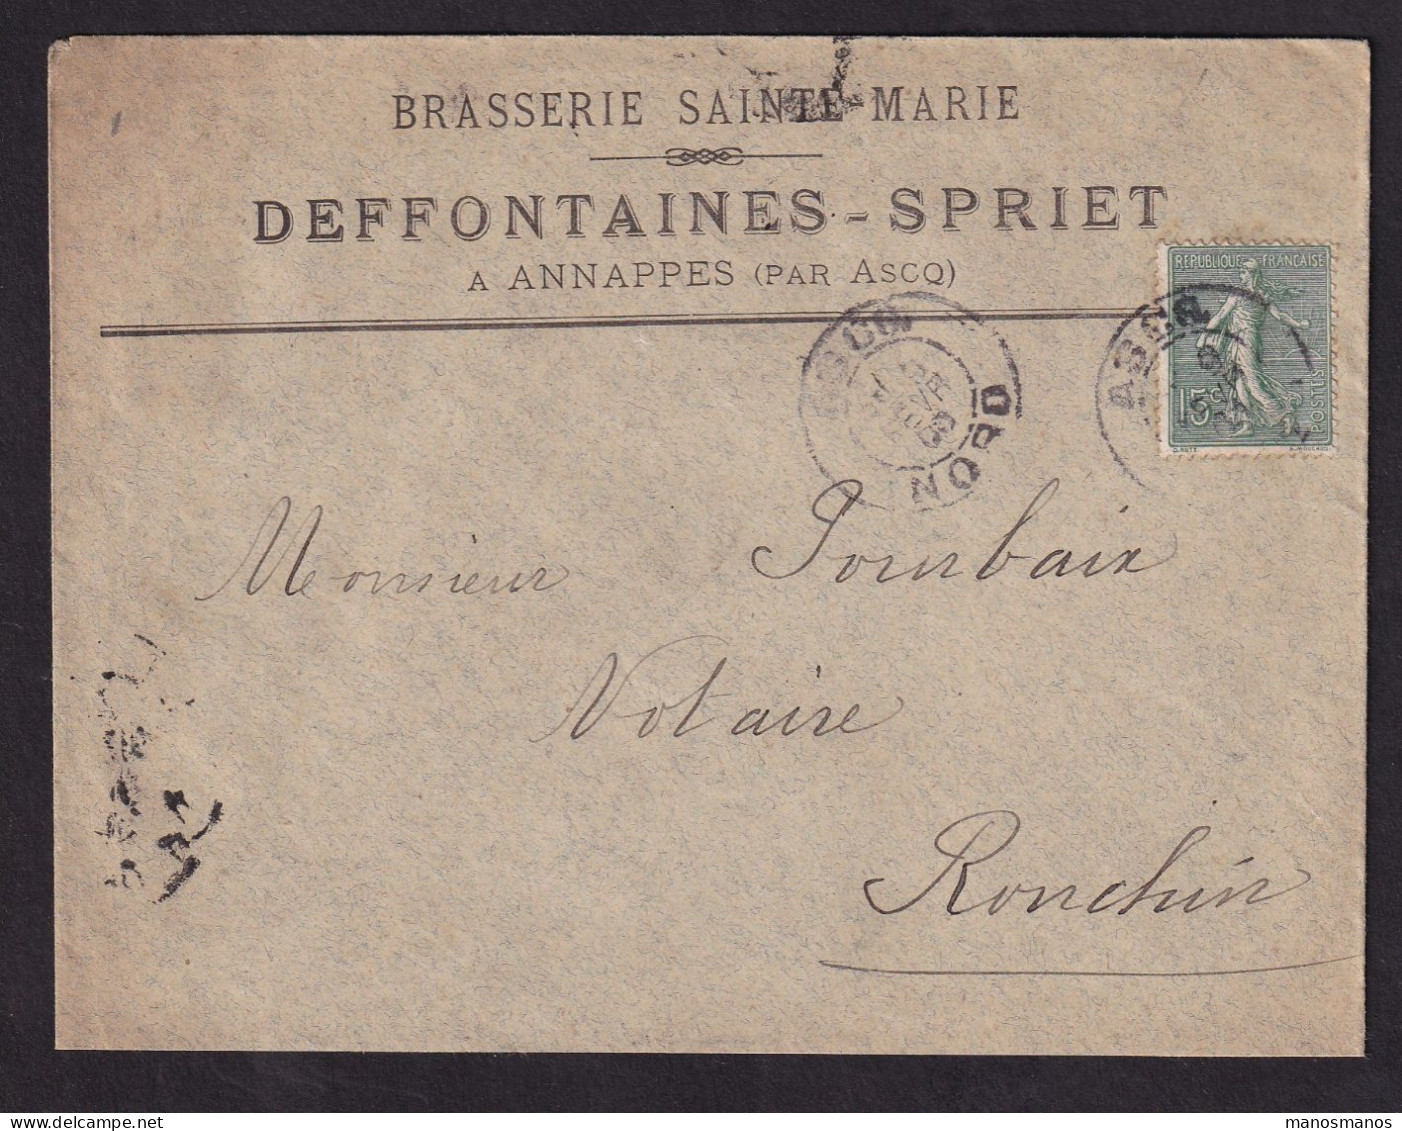 DDDD 928 -- BRASSERIES FRANCE - Enveloppe TP Semeuse ANNAPPES Par ASCQ (Nord) 1908 - Brasserie Sainte-Marie DEFFONTAINES - Bières